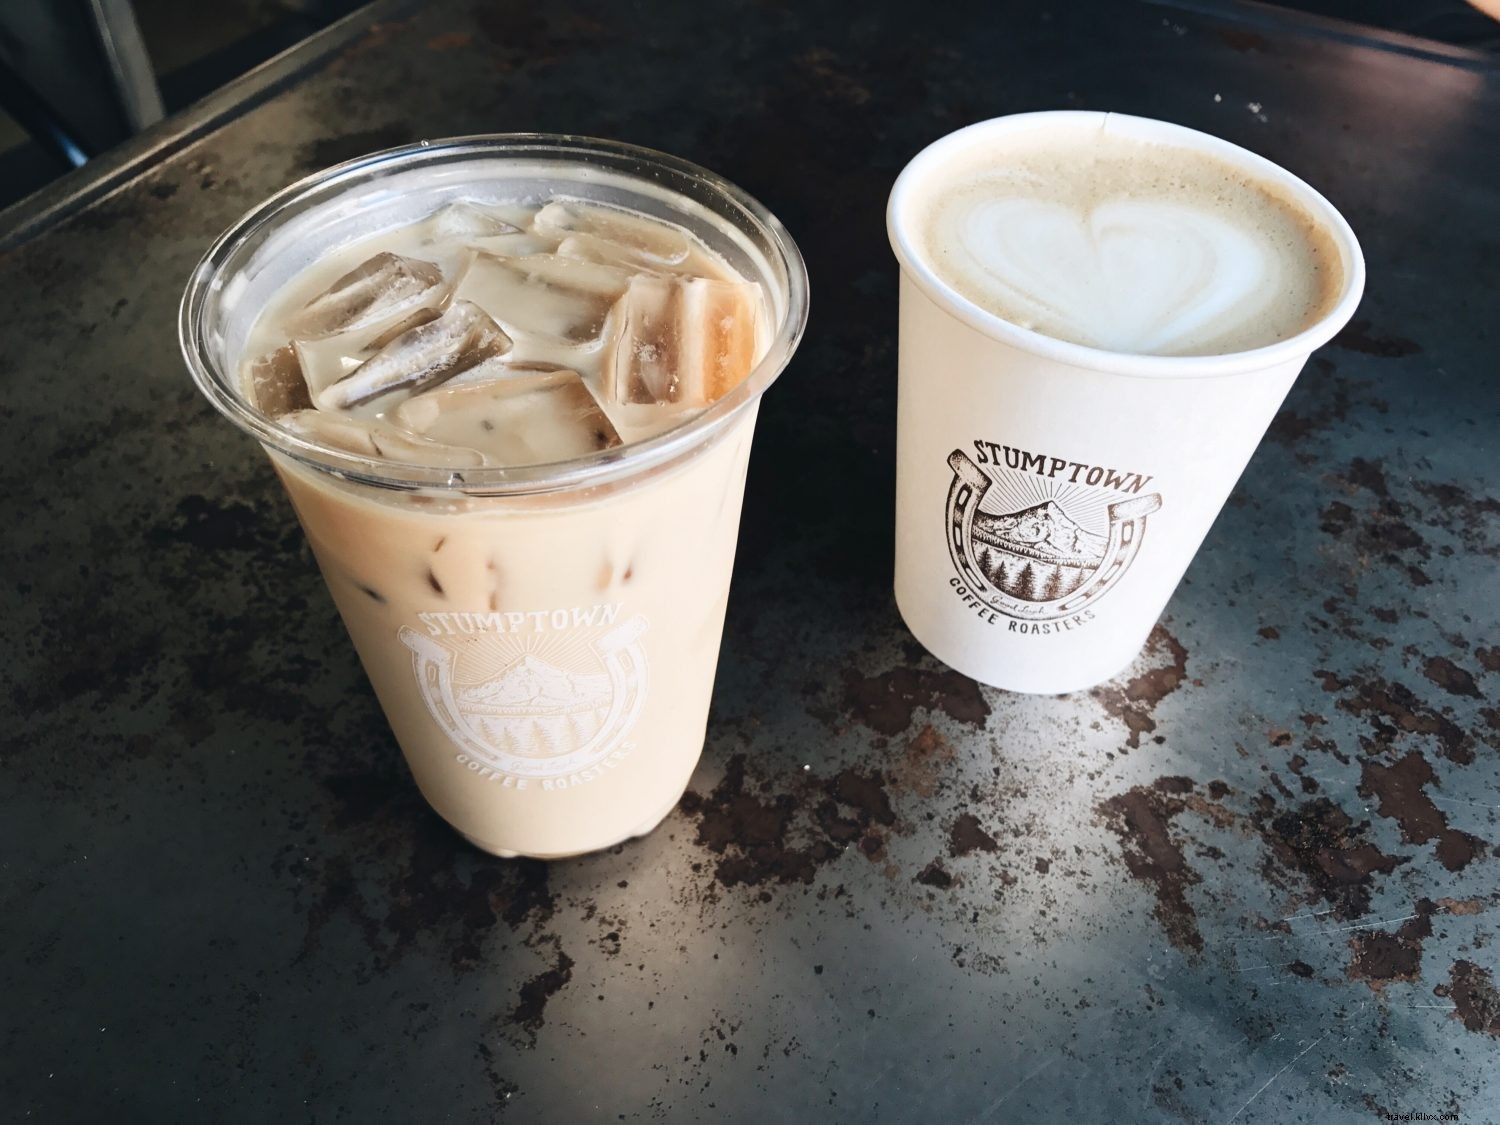 Visite du café :6 cafés à Los Angeles qui sont le paradis d Instagram 